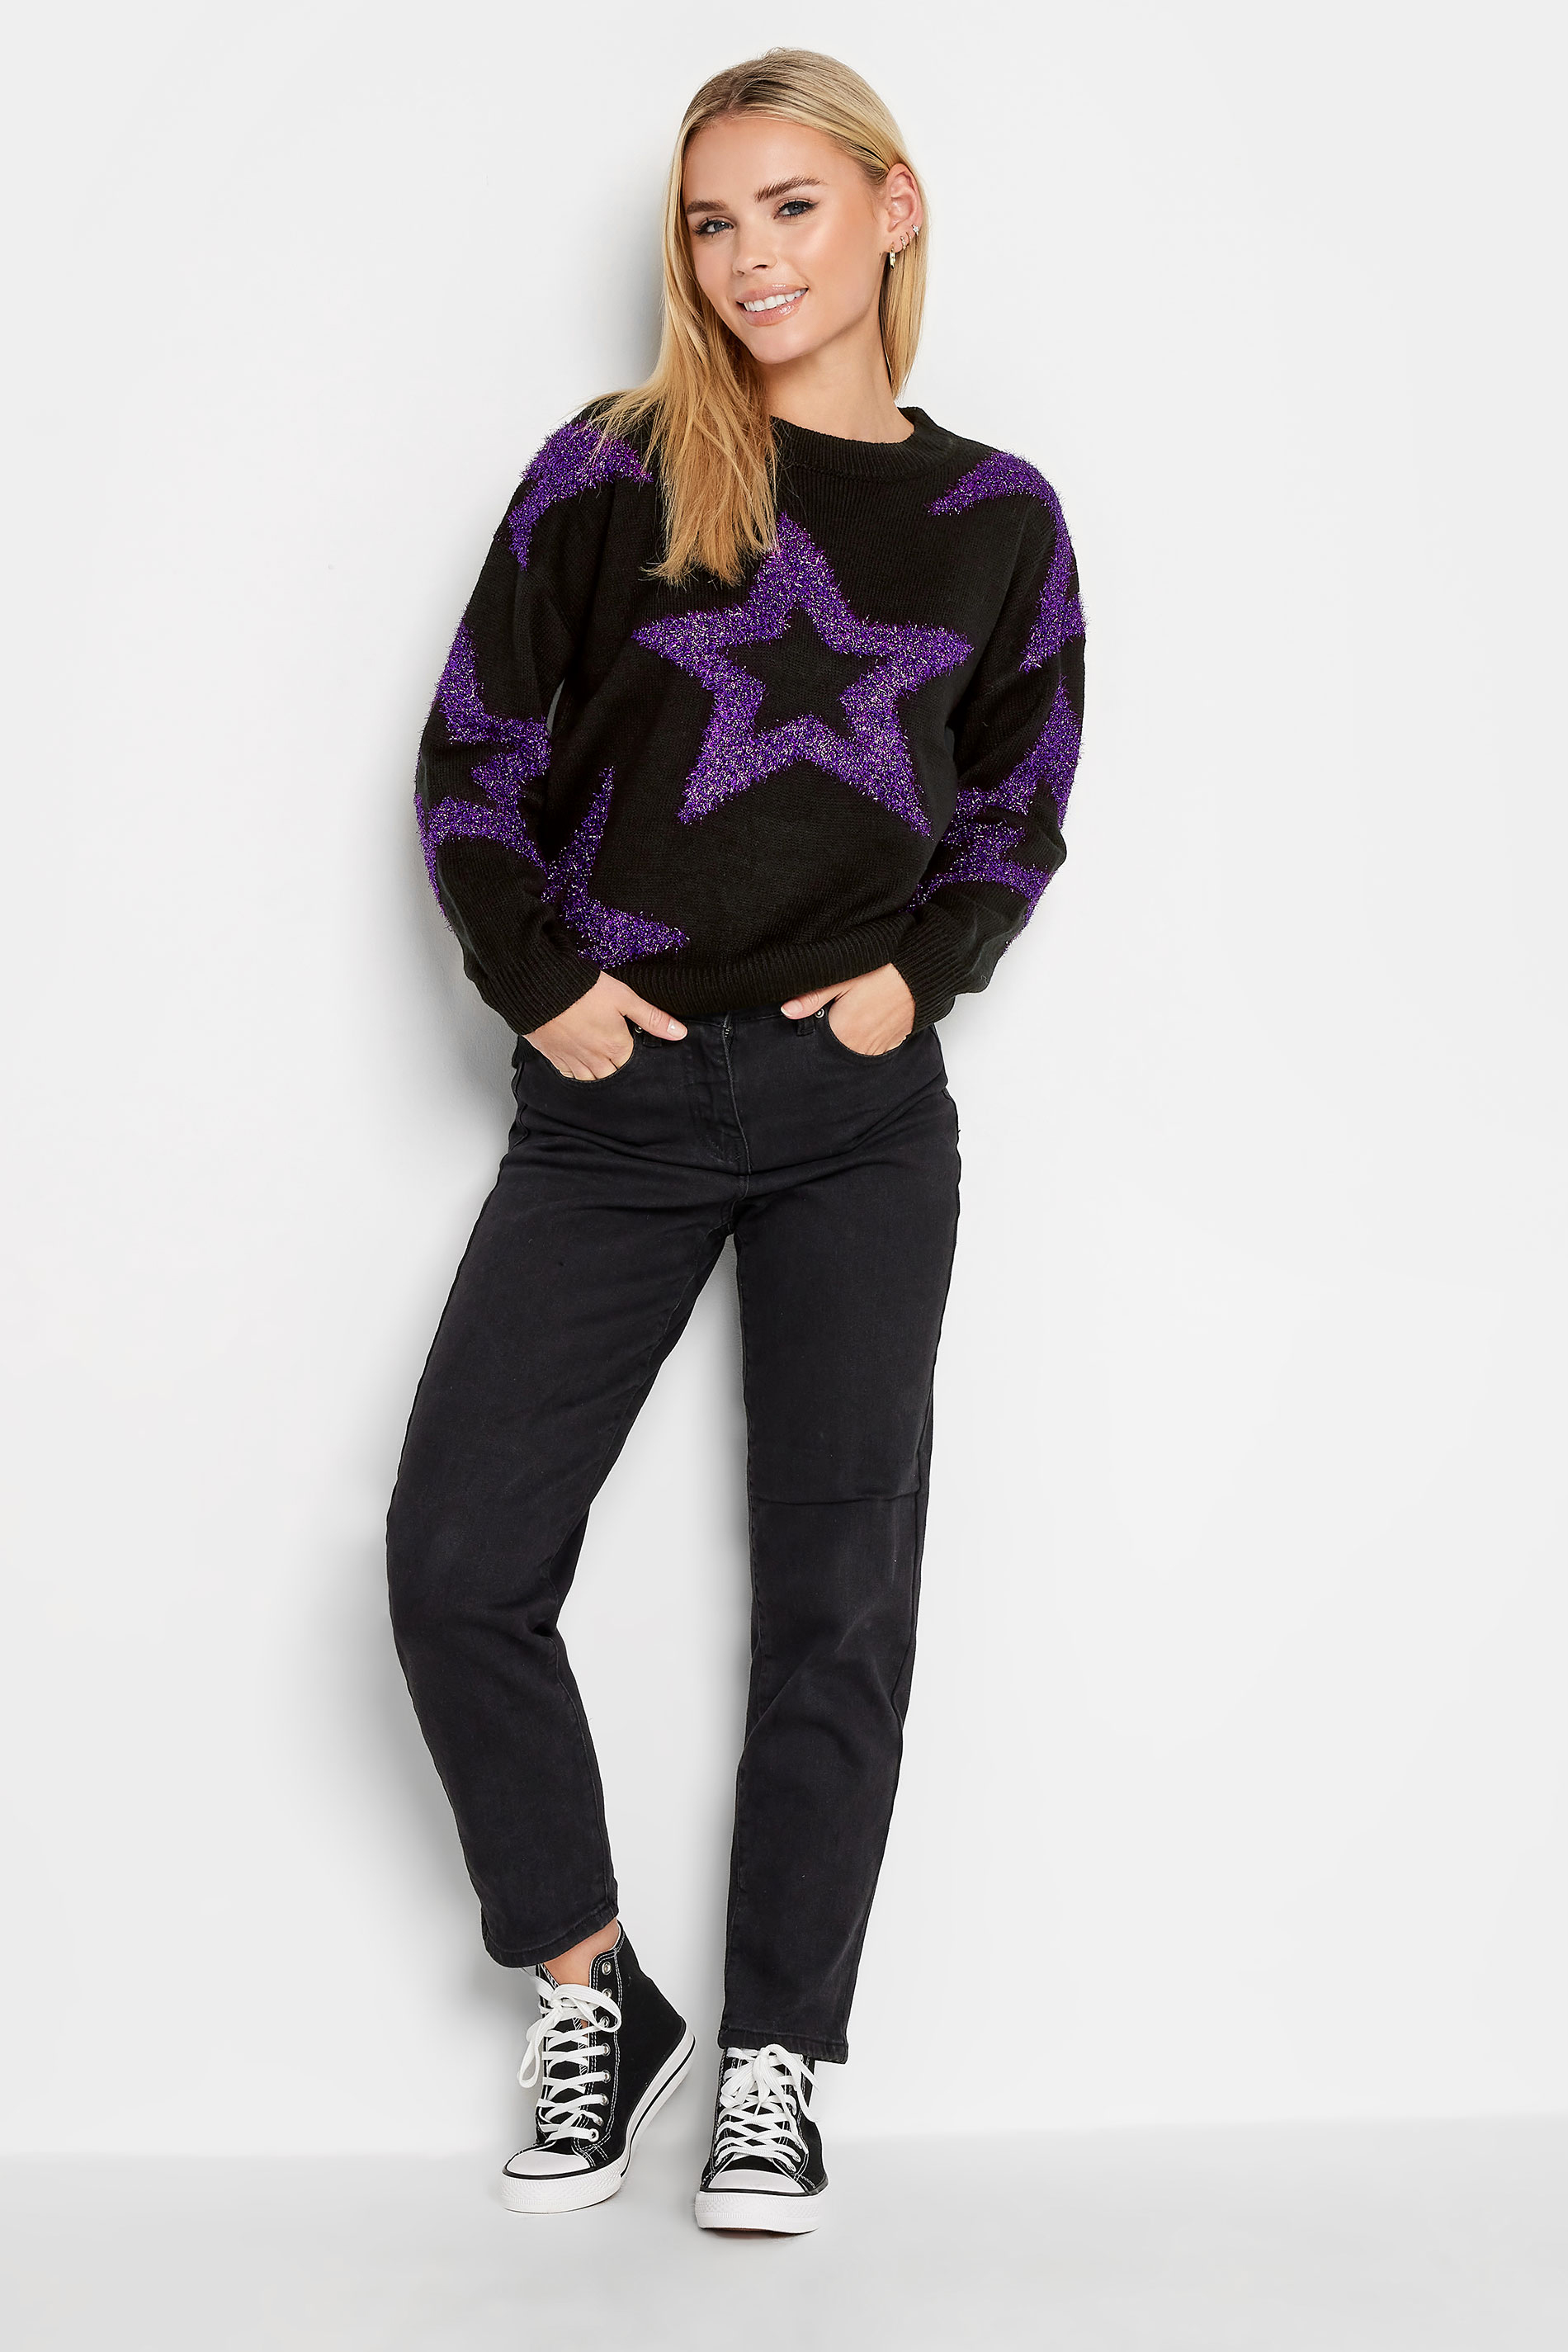 PixieGirl Black & Purple Glitter Star Jumper | PixieGirl  2